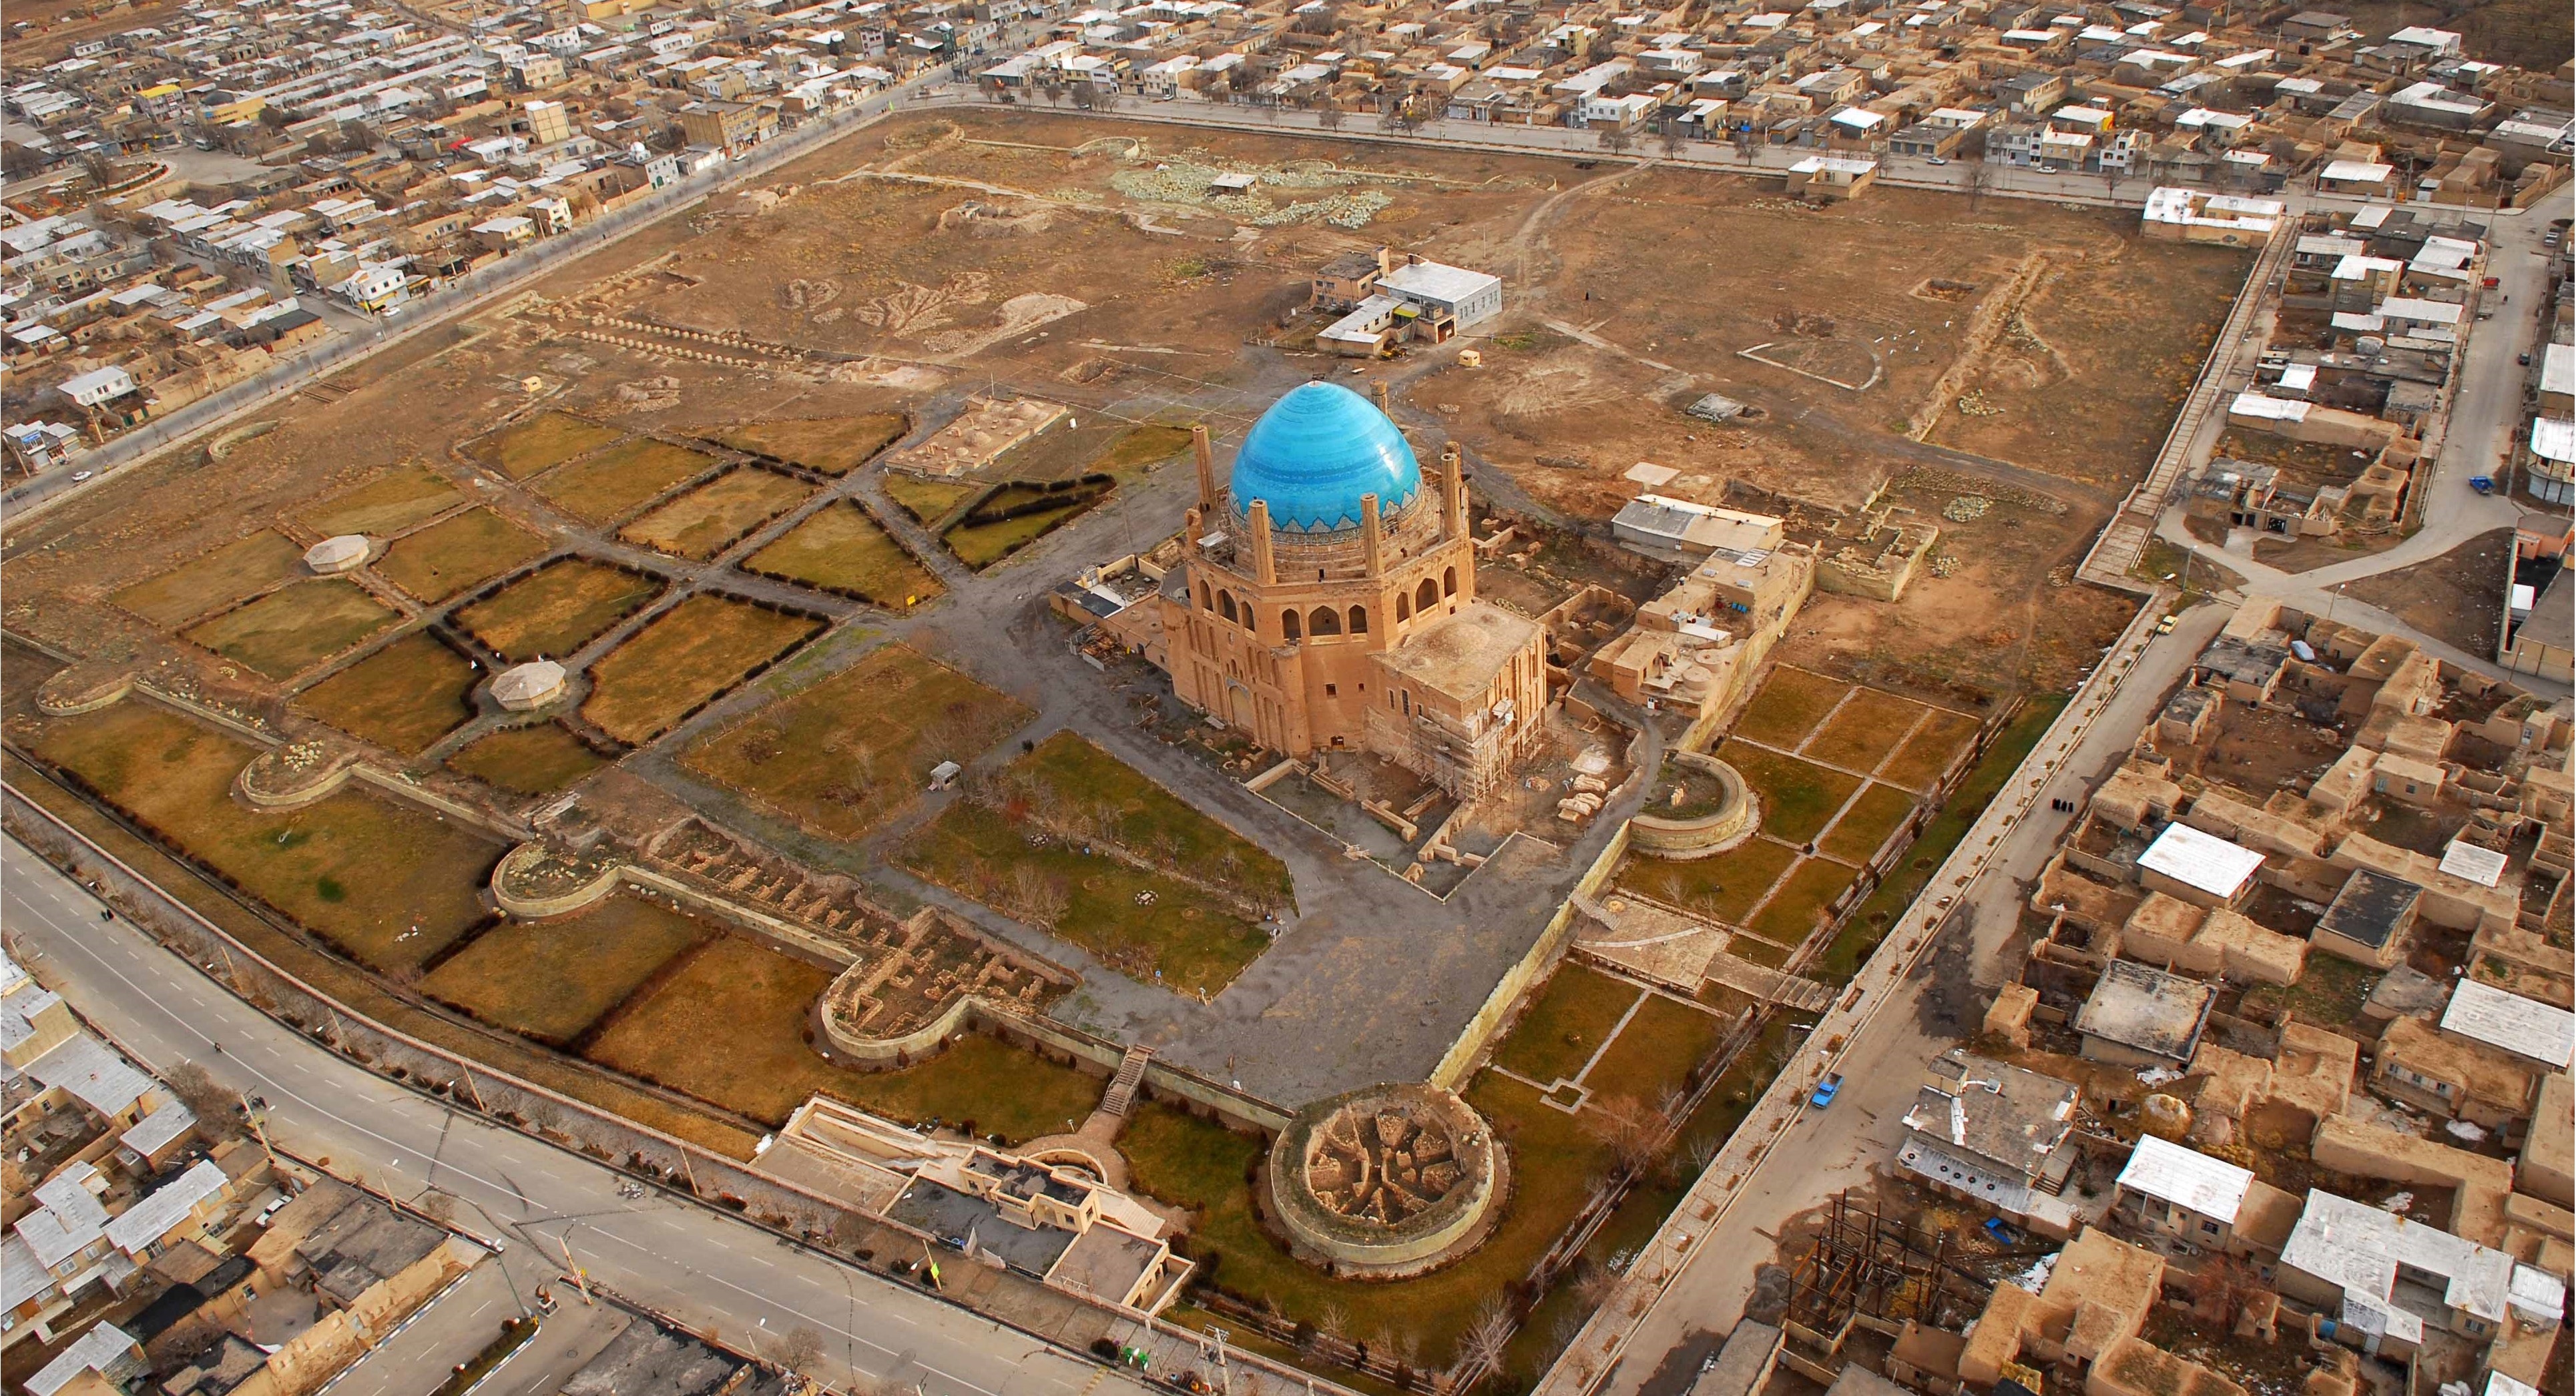 گنبد سلطانیه زنجان نخستین گنبد دو پوسته دنیا